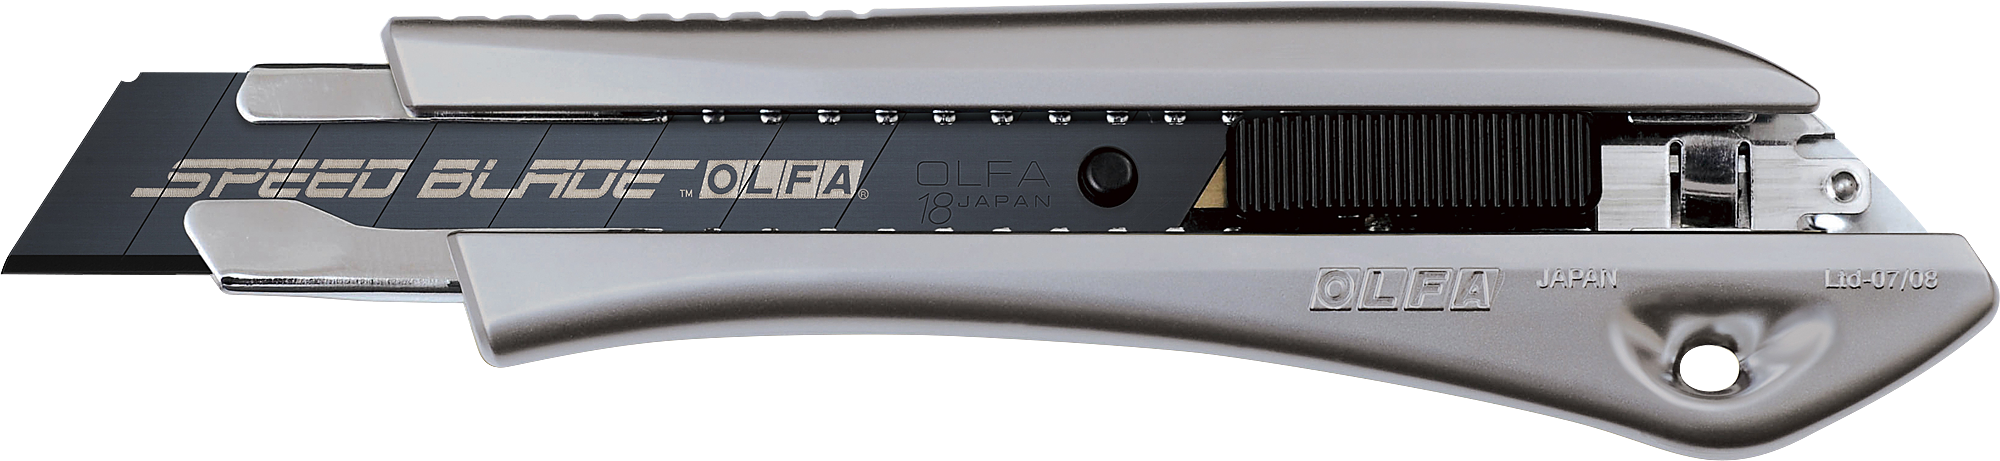 Нож 18мм, автофиксатор Olfa. Нож Olfa с сегментированным лезвием 18 мм ol-Ltd-l-LFB. Olfa лезвия 18мм. Olfa ol-Ltd-al-LFB. Лезвия olfa 18